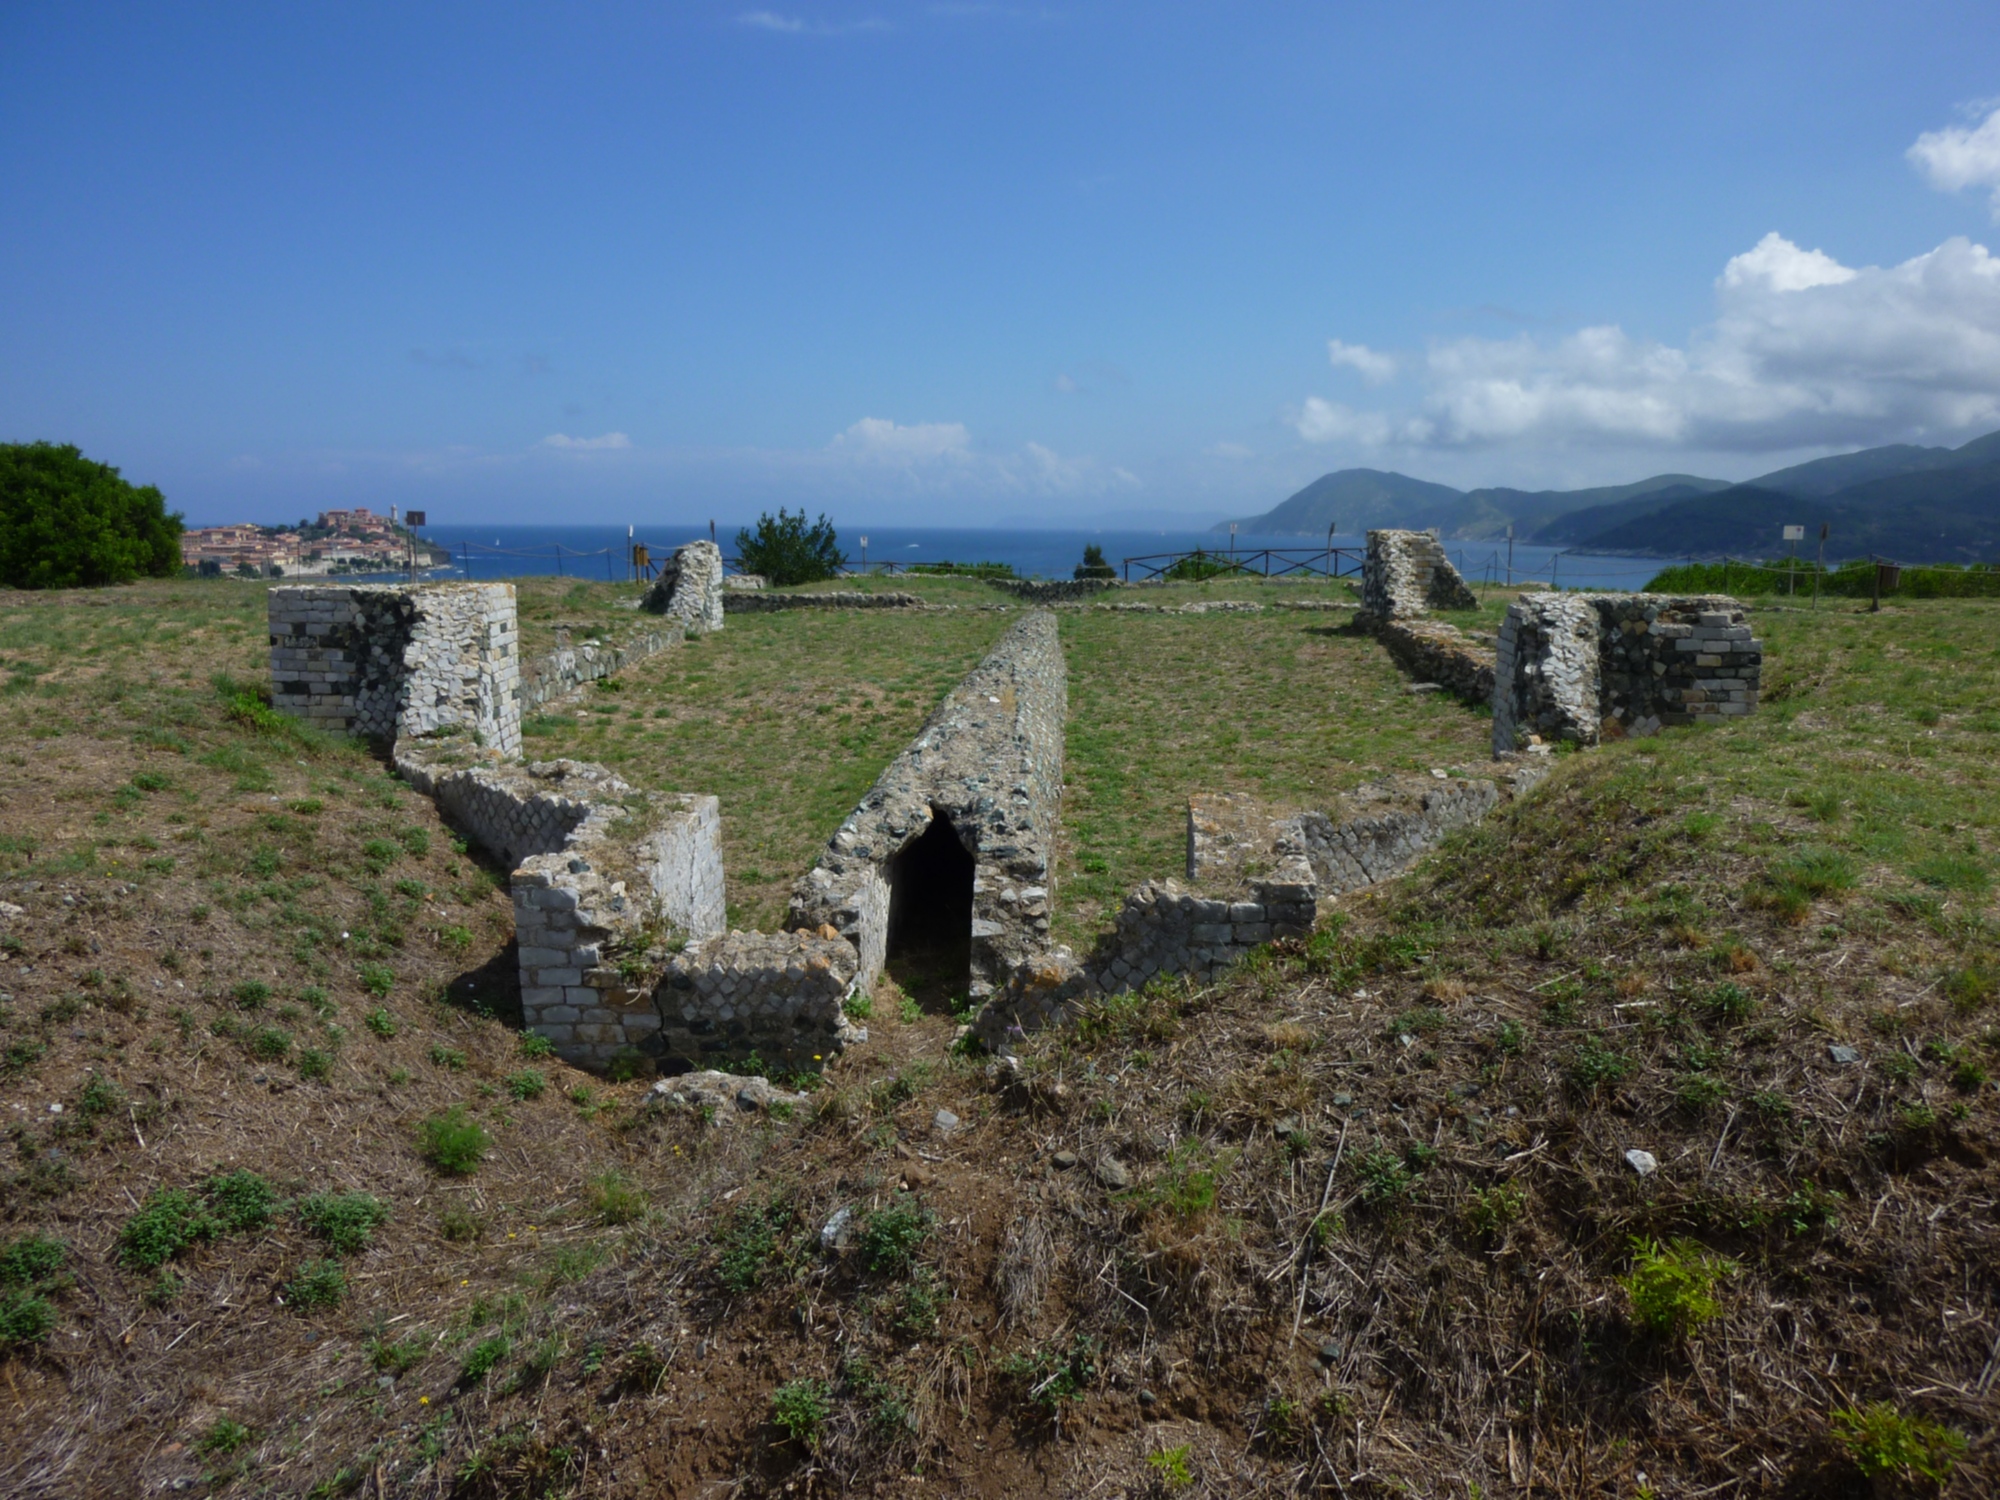 Villa romana delle Grotte